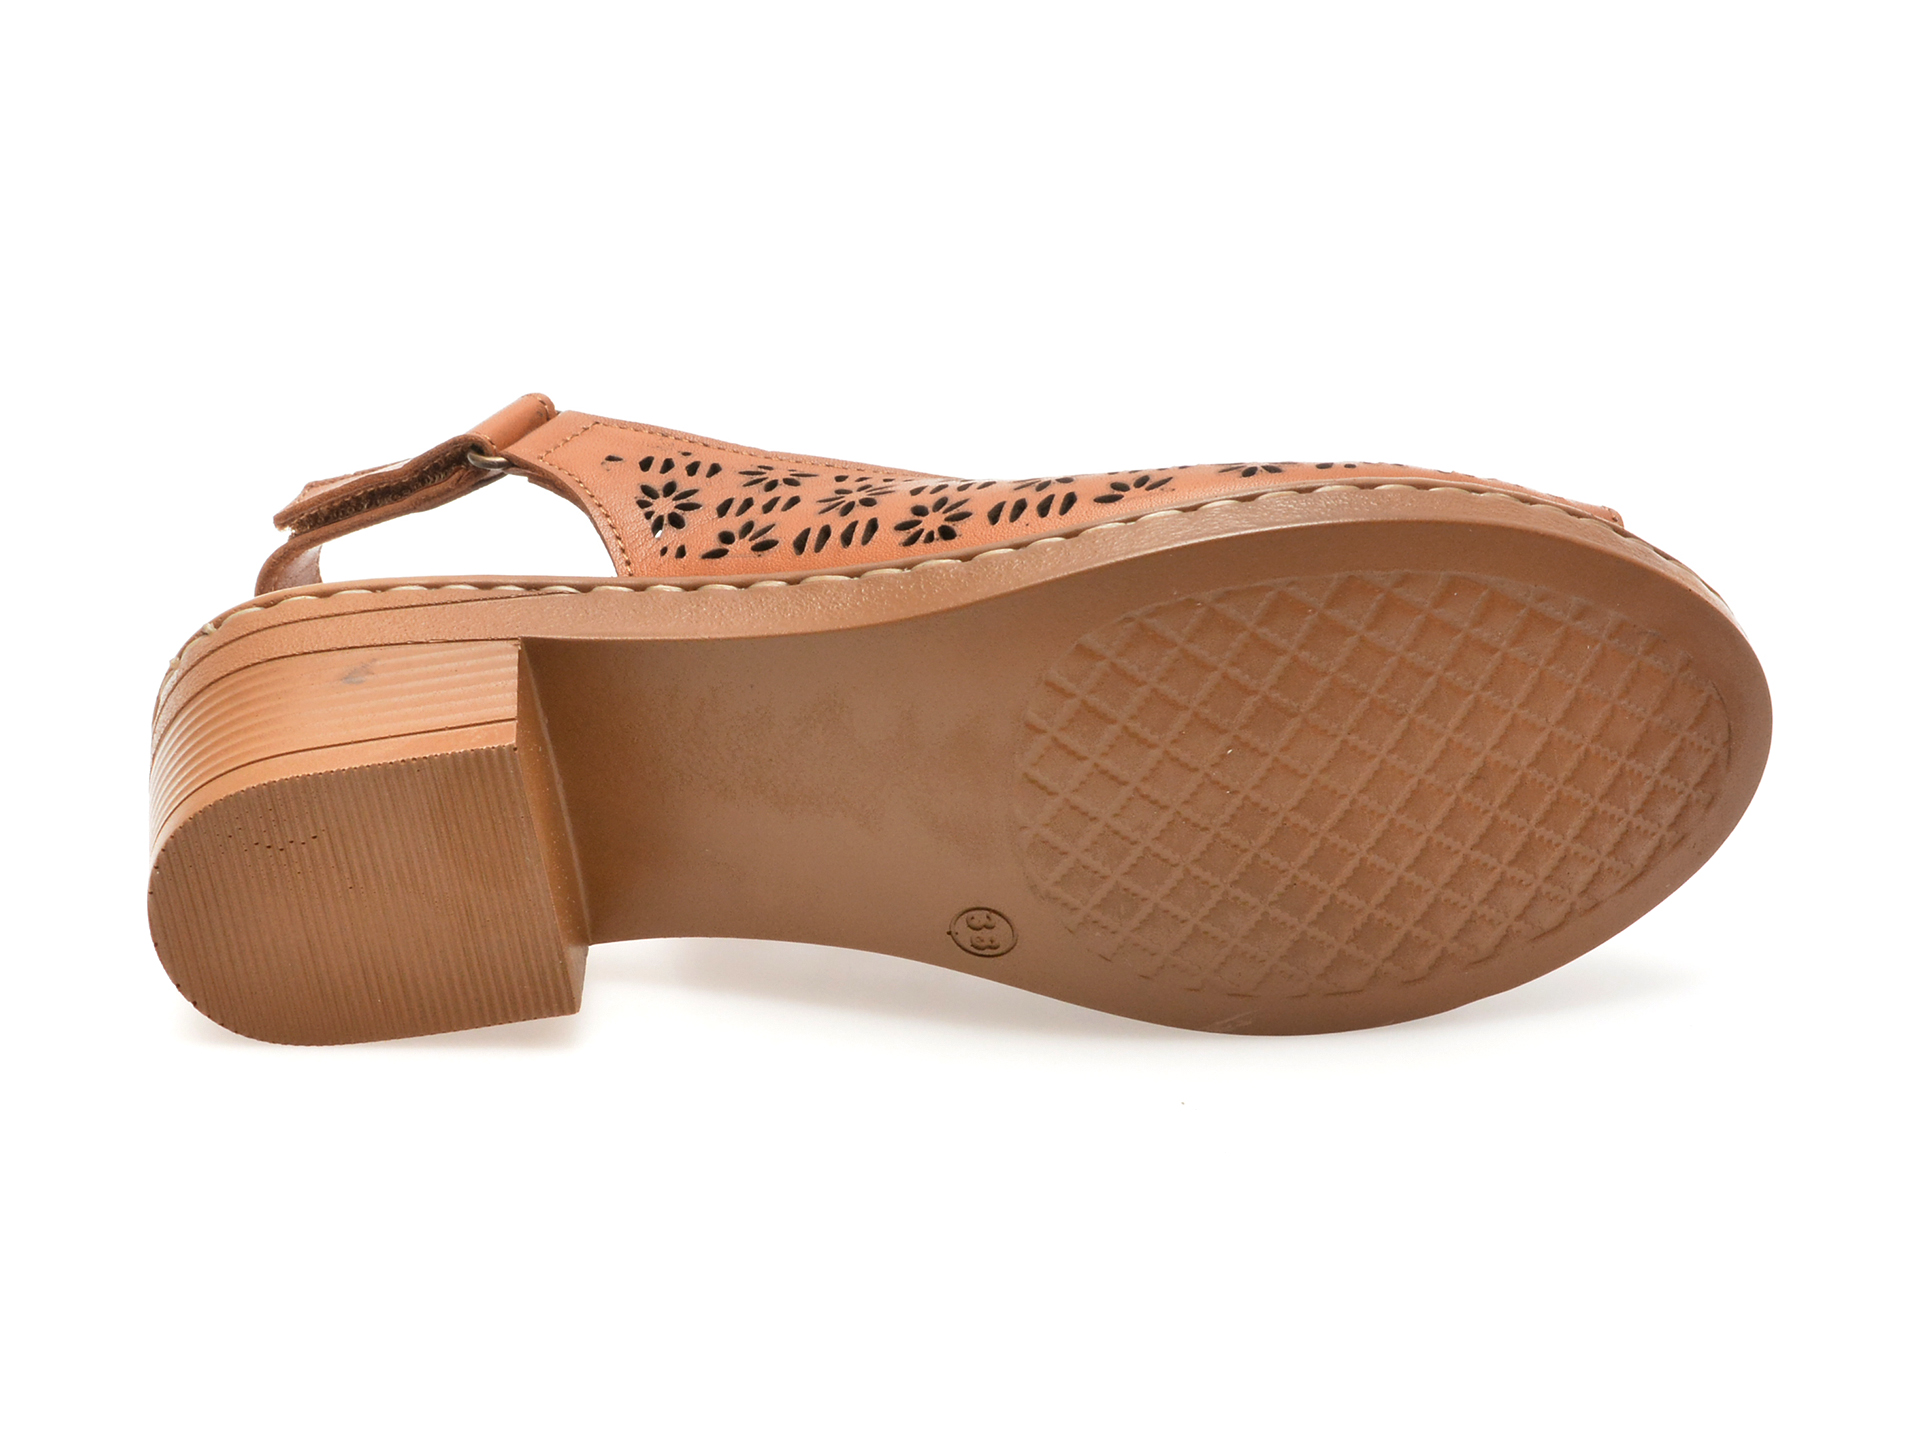 Sandale casual FLAVIA PASSINI maro, 9501, din piele naturala